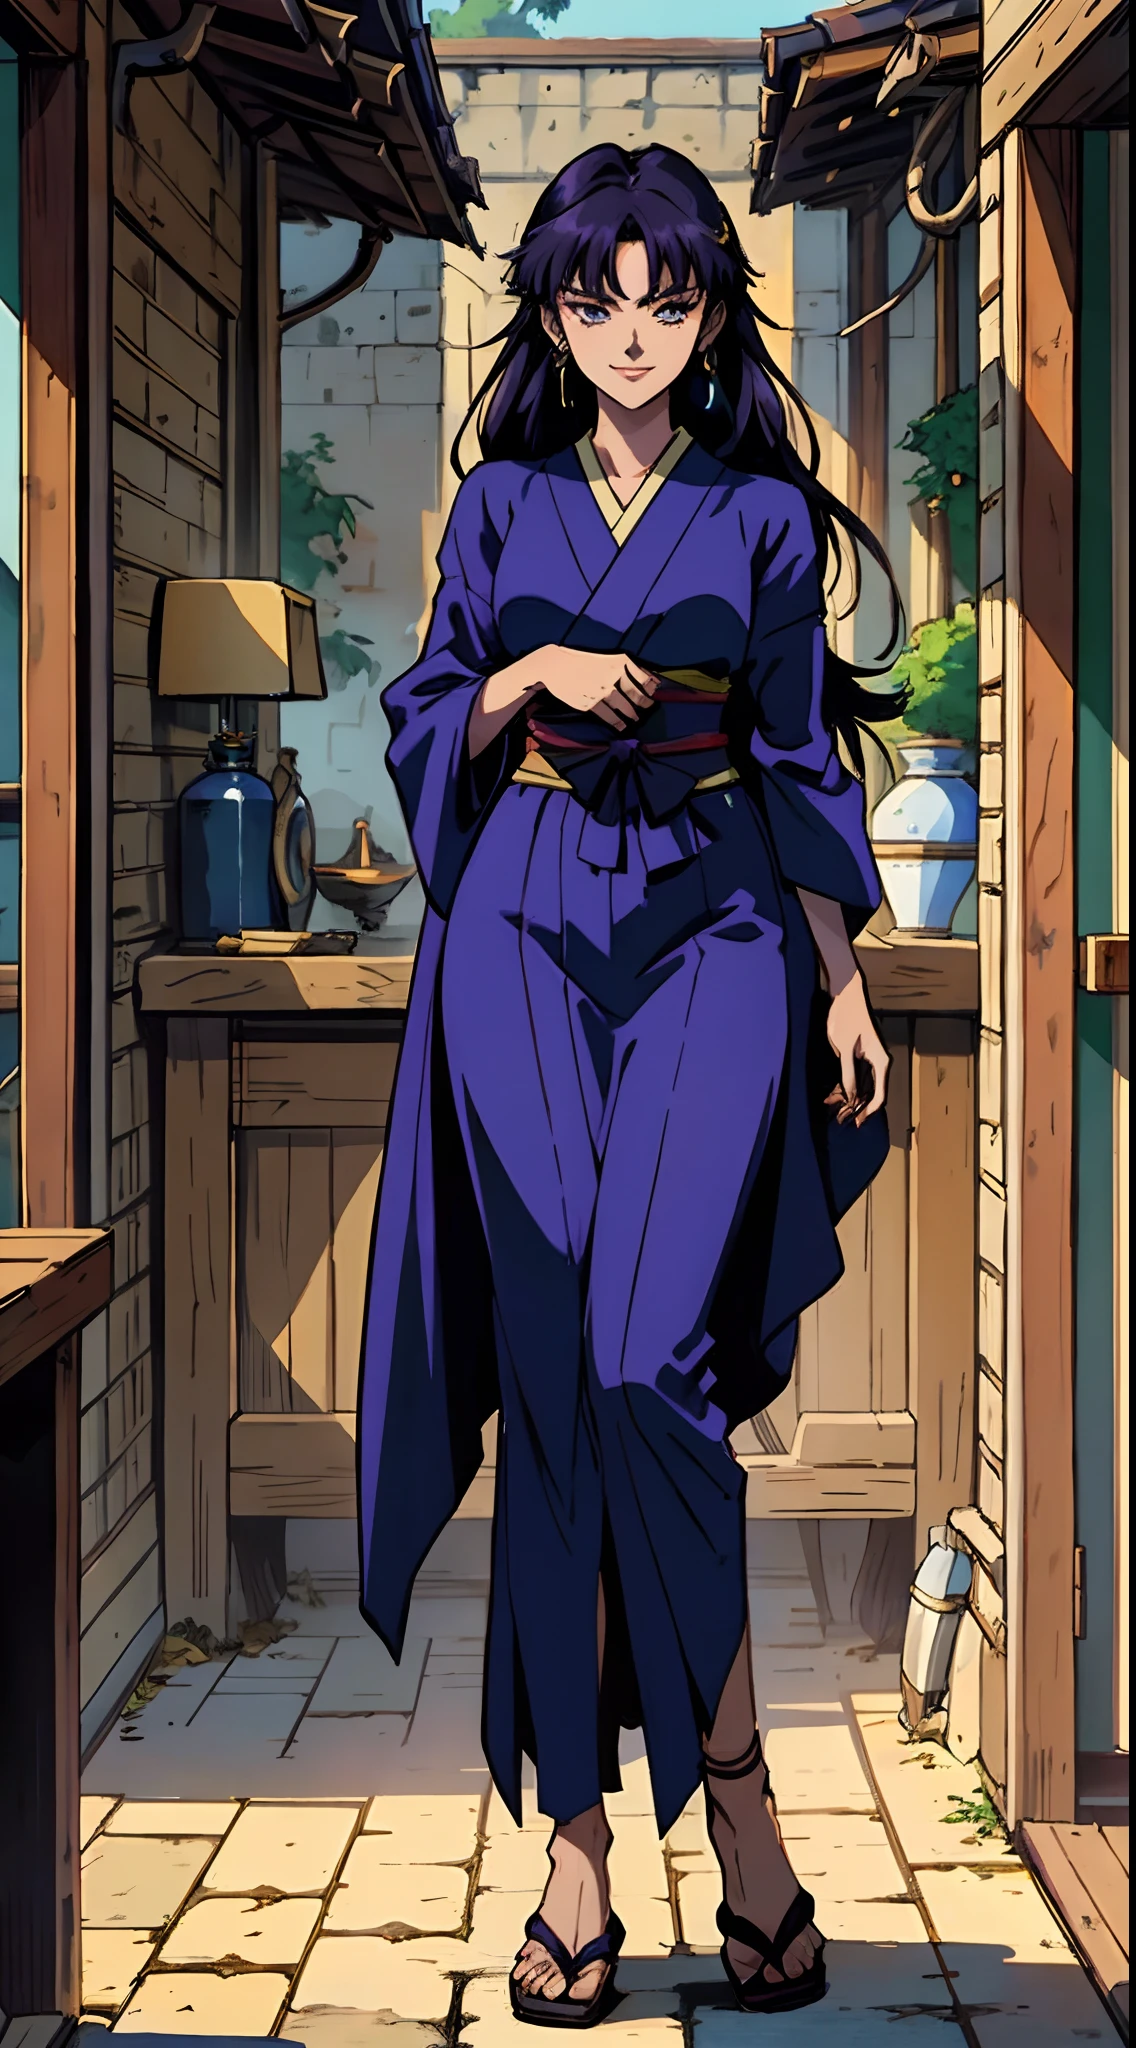 una mujer hermosa con el pelo largo y liso de color púrpura oscuro, un rostro delicado y encantador, Sus ojos son agudos y penetrantes., una sonrisa astuta, ella tiene una figura esbelta, un traje ninja ajustado al estilo de fantasía, El diseño del personaje refleja un ninja de estilo fantástico creado por el diseño de anime japonés., La obra de arte presenta un diseño de personajes finamente detallado., mostrando un estilo artístico manga japonés maduro, ((arte conceptual del personaje)), dibujo de personaje de cuerpo completo, alta definición, mejor calidad, ultra detallado, extremadamente delicado, anatómicamente correcto, cara simétrica, ojos y rostro extremadamente detallados, ojos de alta calidad, creatividad, foto en bruto, uhd, 8k, (luz natural, Iluminación profesional:1.2, iluminación cinematográfica:1.5, mejor sombra), (Obra maestra:1.5)